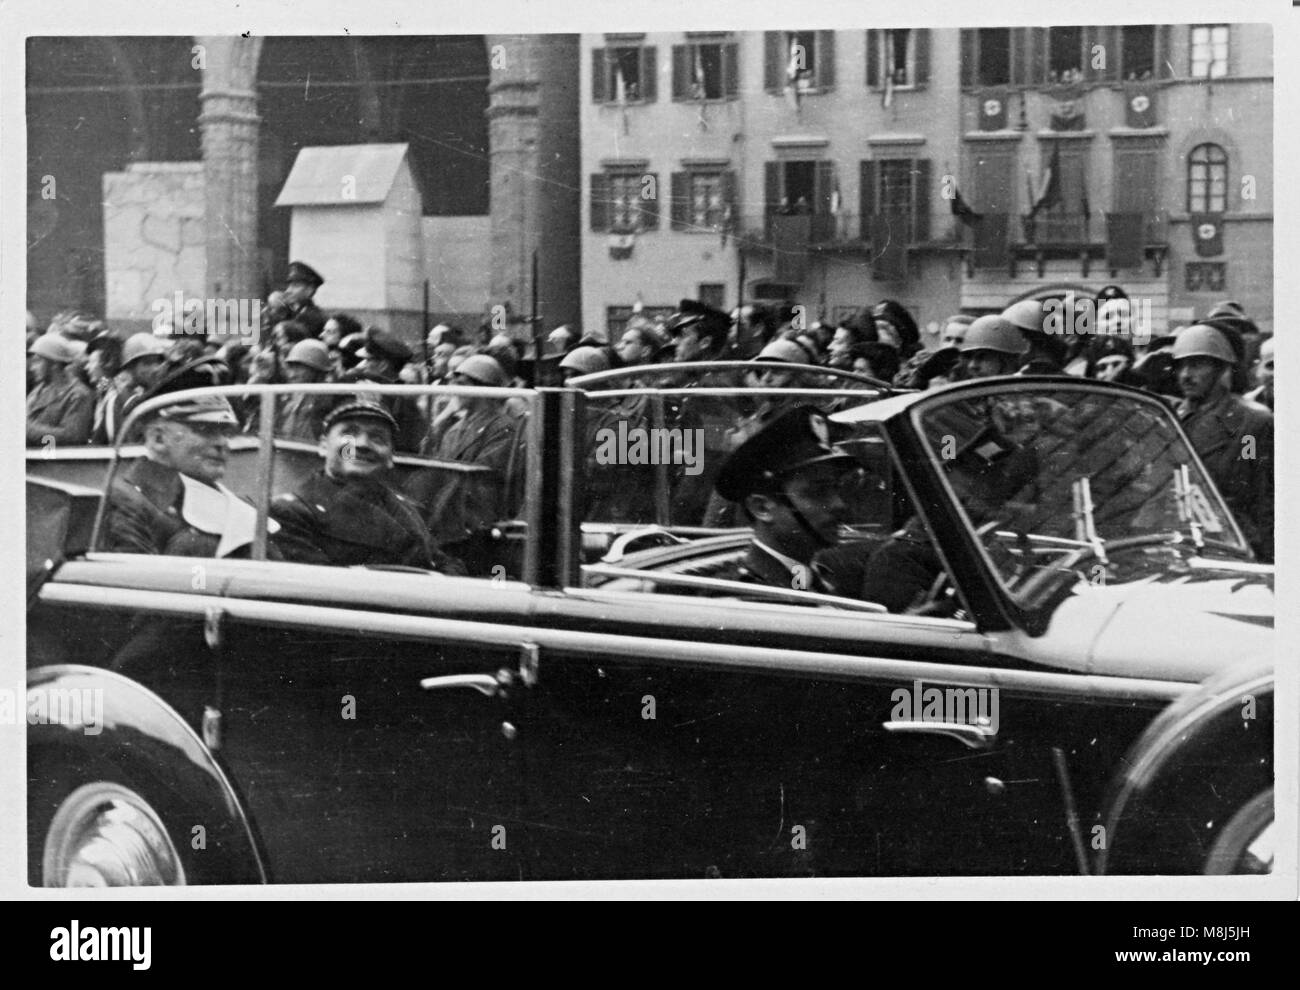 Photo historique de la DEUXIÈME GUERRE MONDIALE : Hitler, Mussolini, Ribbentropp, Ciano, Starace, Bottai visiter Firenze, Italie - le 9 mai, 1938 Banque D'Images